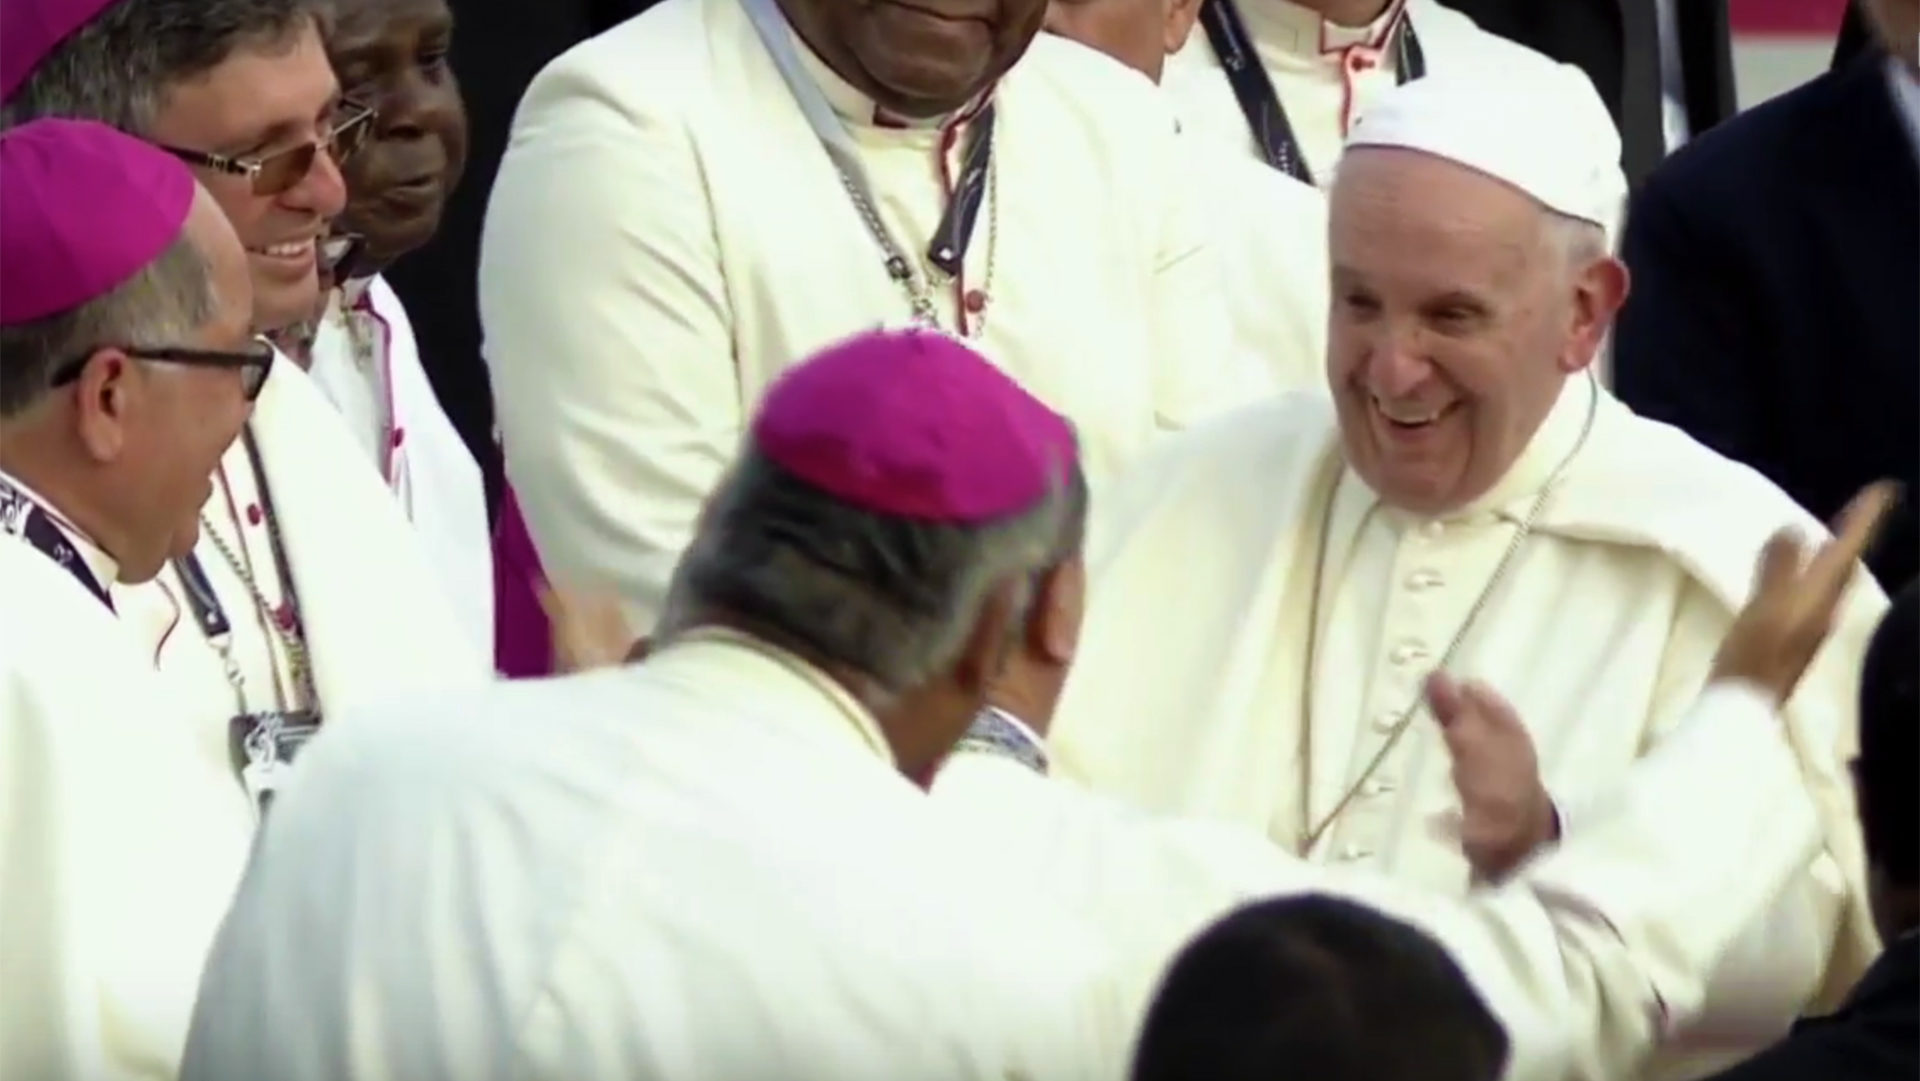 A l'arrivée du pape, les évêques panaméens se pressent à sa rencontre | capture d'écran youtube.com